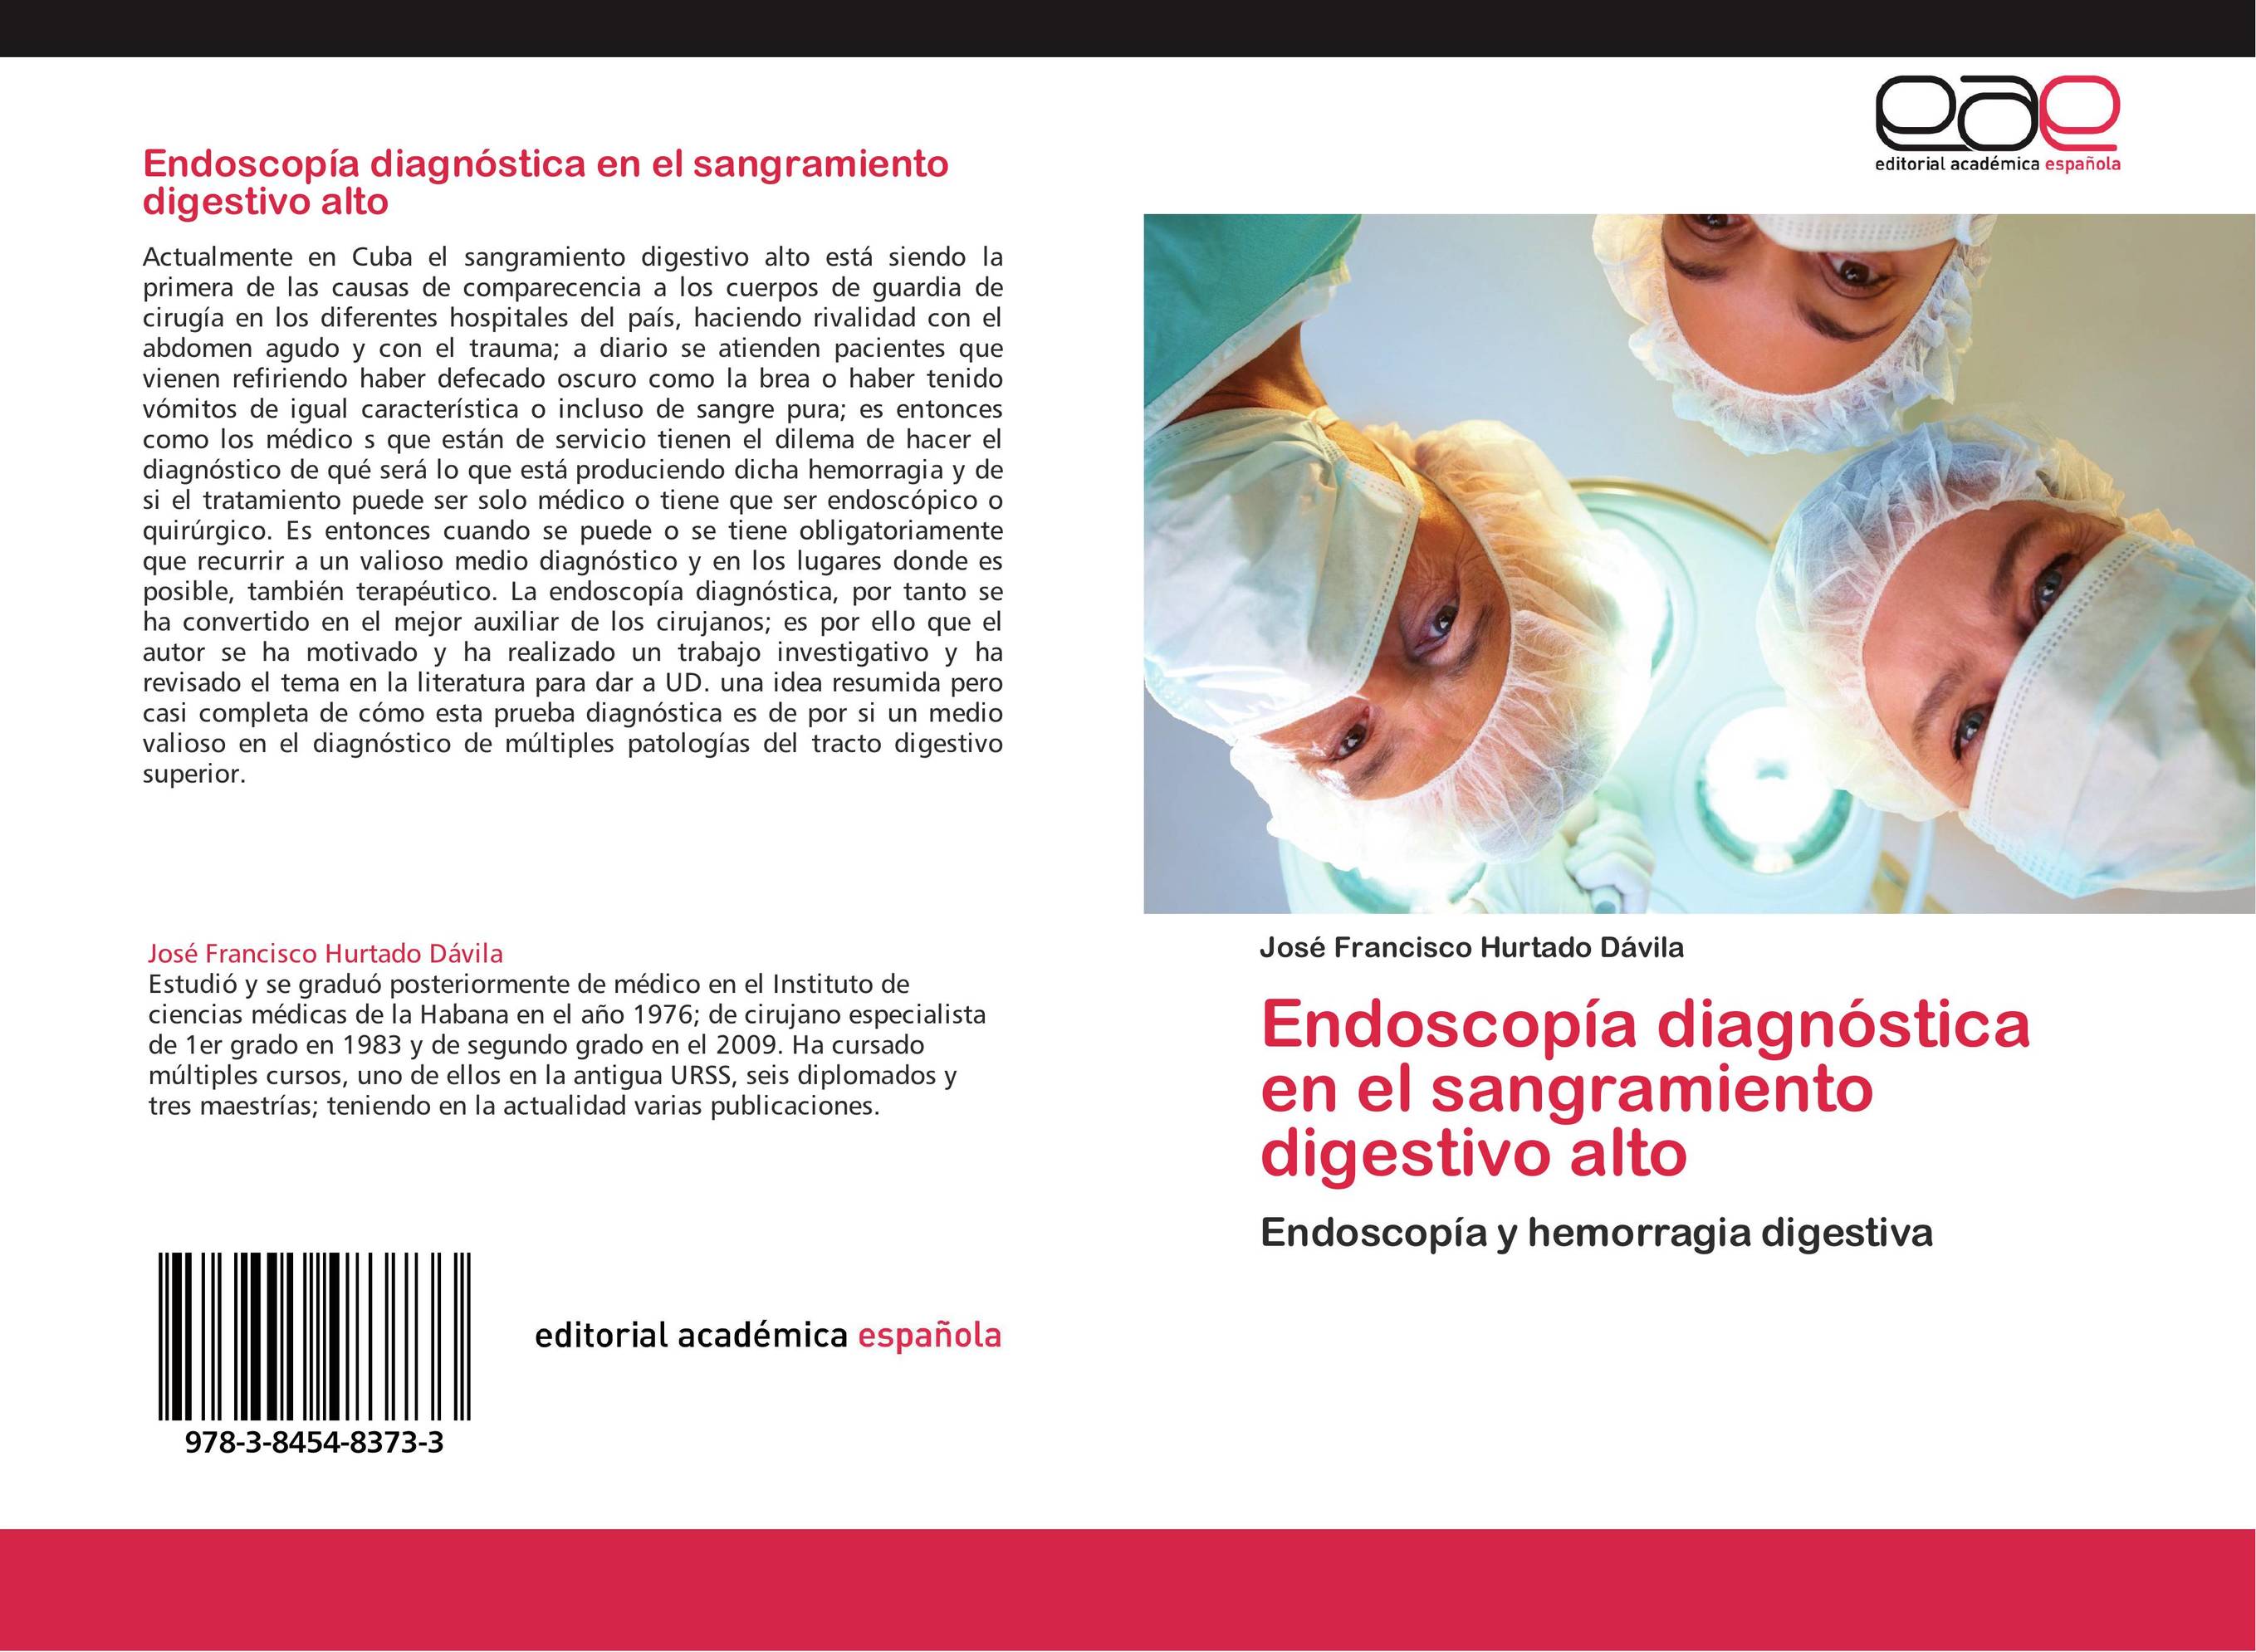 Endoscopía diagnóstica en el sangramiento digestivo alto